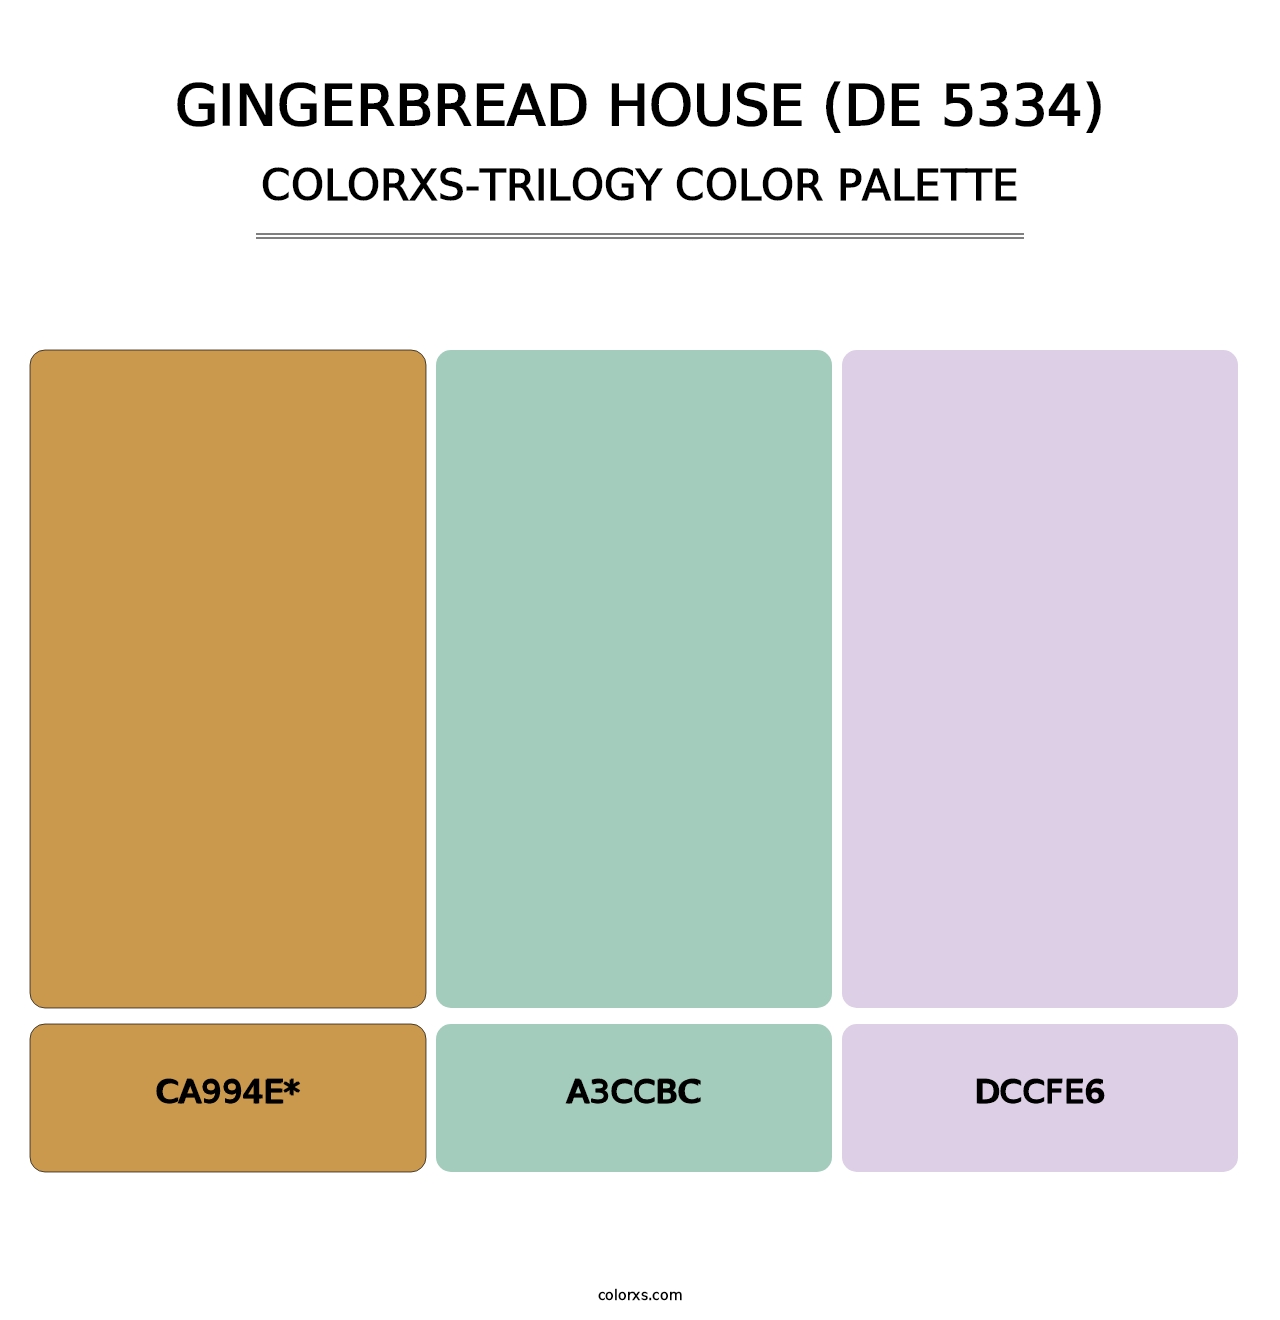 Gingerbread House (DE 5334) - Colorxs Trilogy Palette